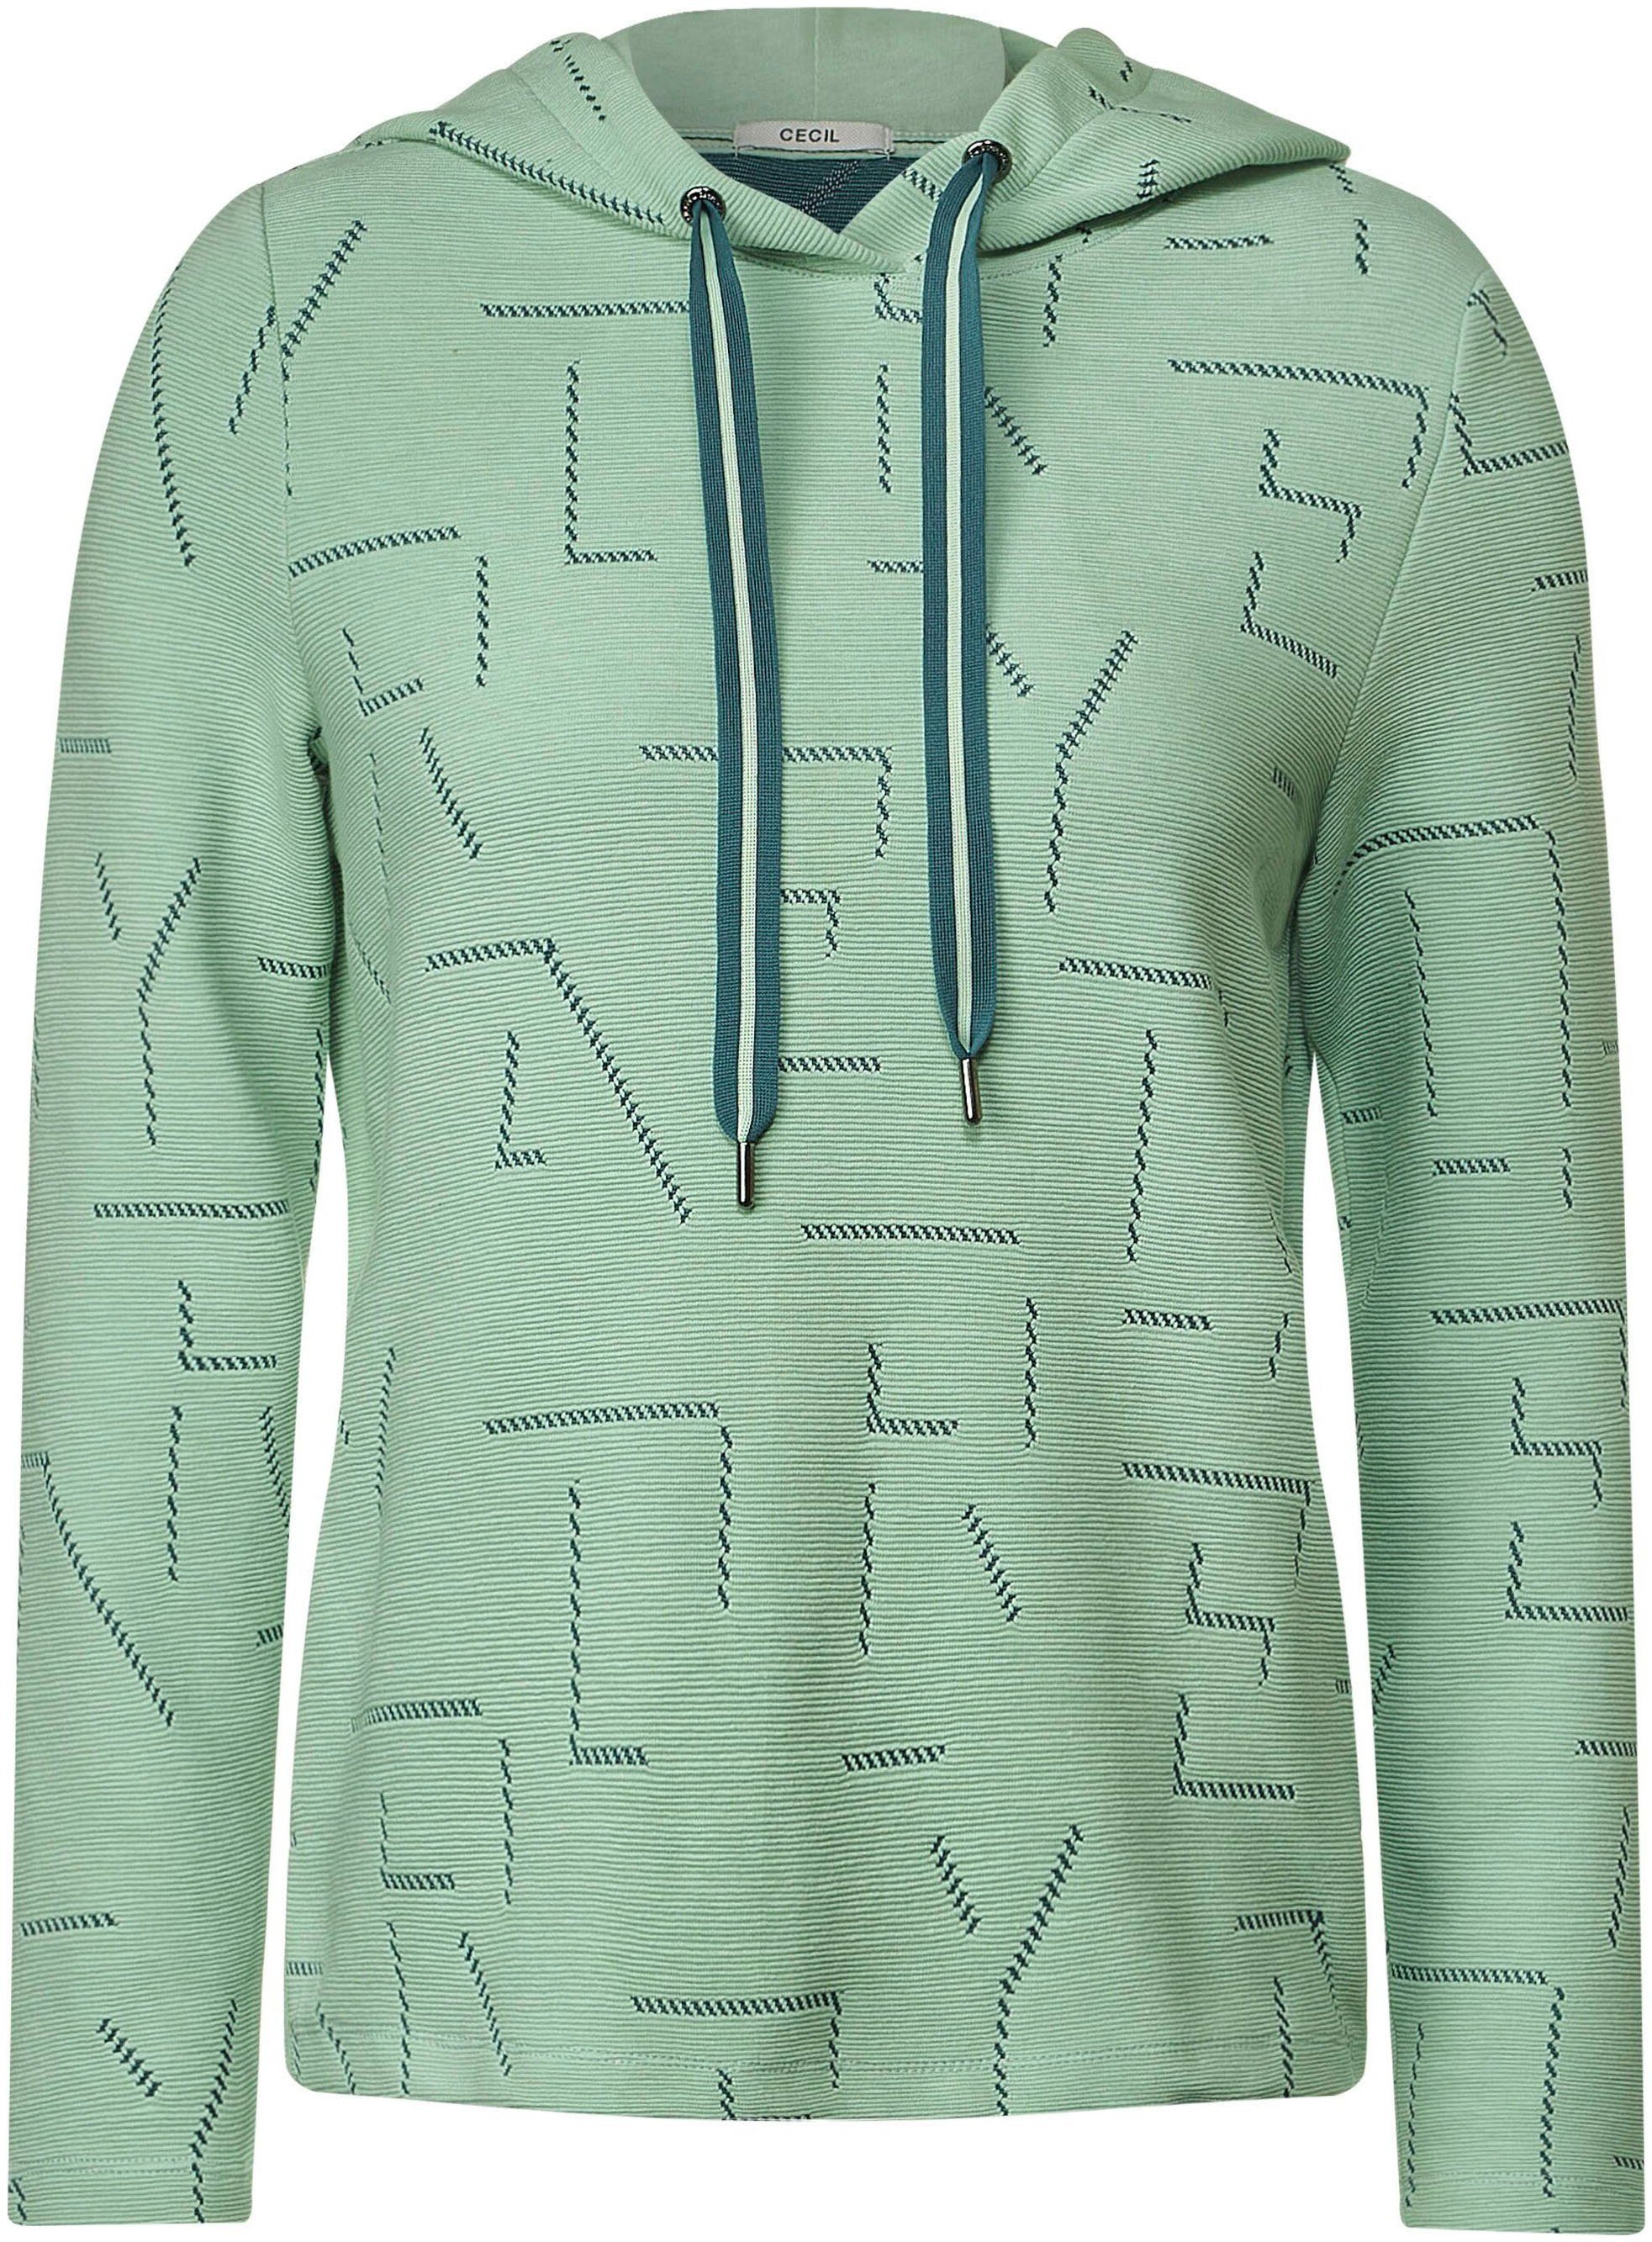 sage Cecil mit Jacquard-Muster green clear einzigartigem Sweatshirt